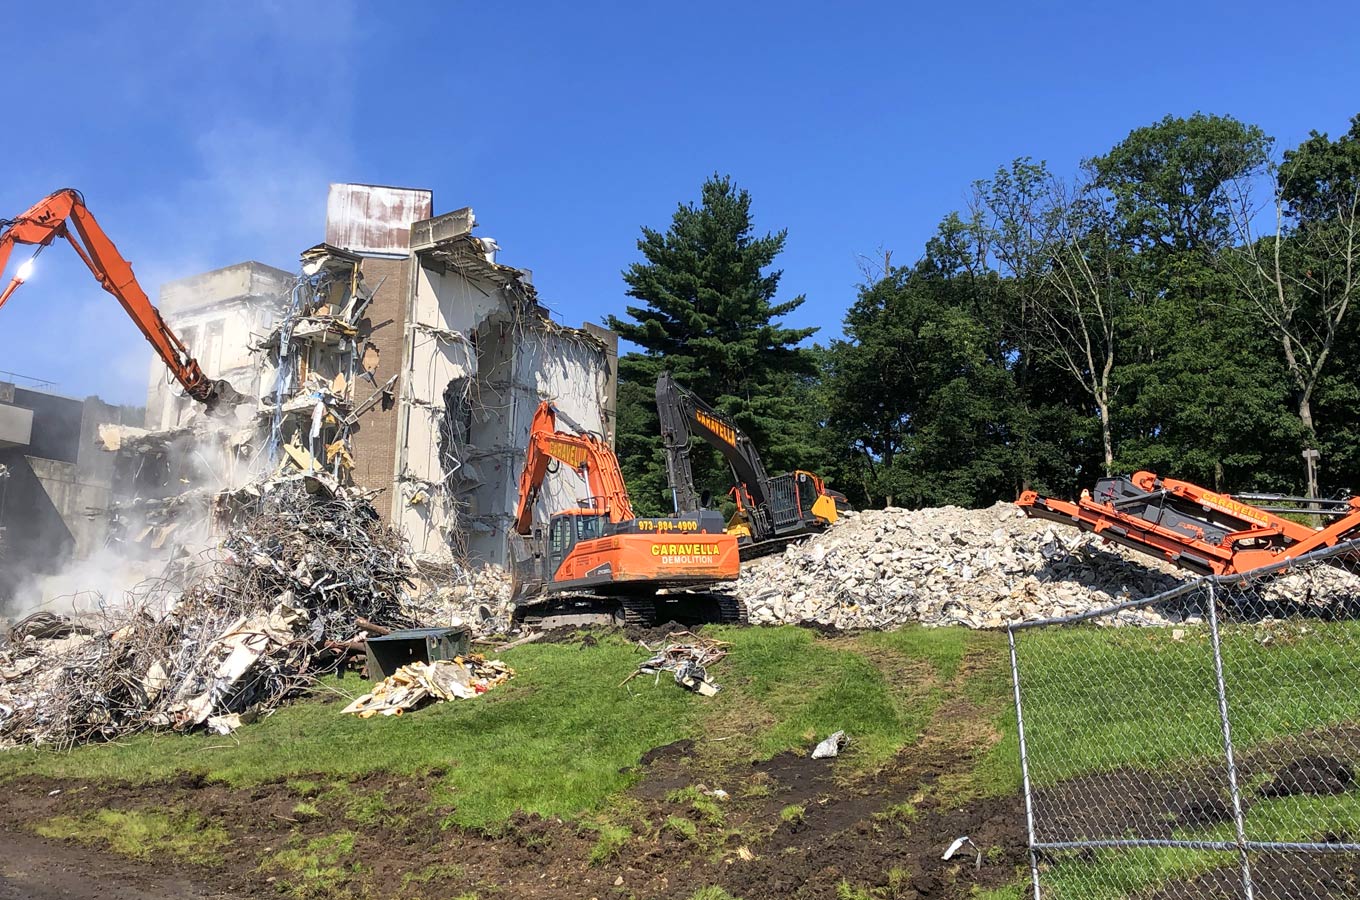 Demolition Services in Perth Amboy, NJ 08861 | Caravella Demolition